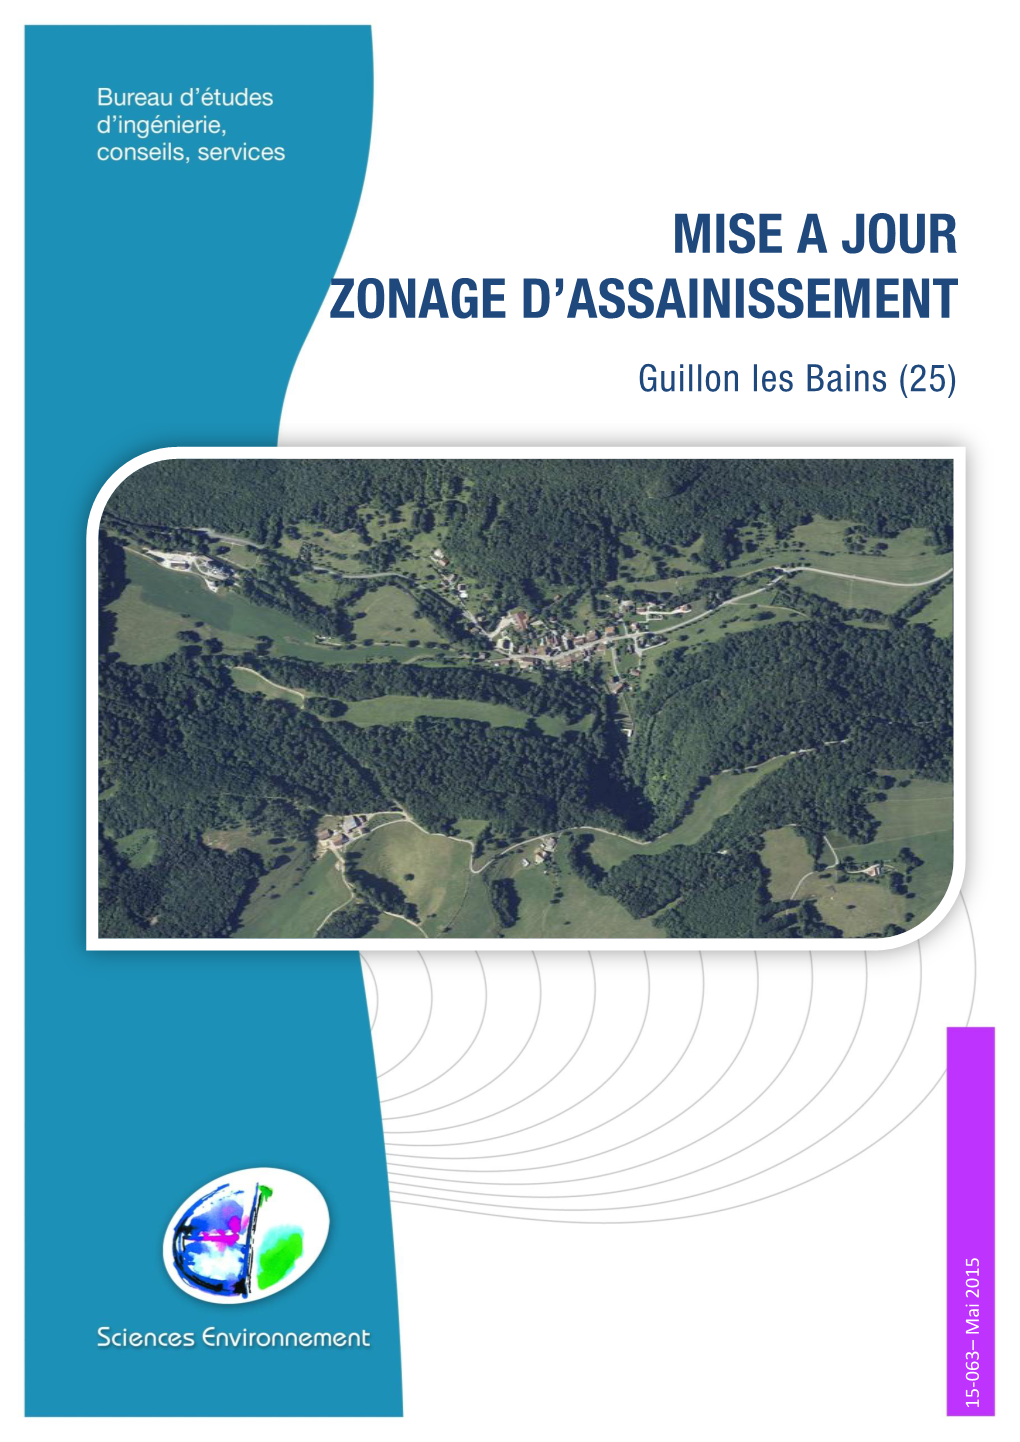 Zonage D'assainissement Guillon Les Bains 5 Zonage D’Assainissement